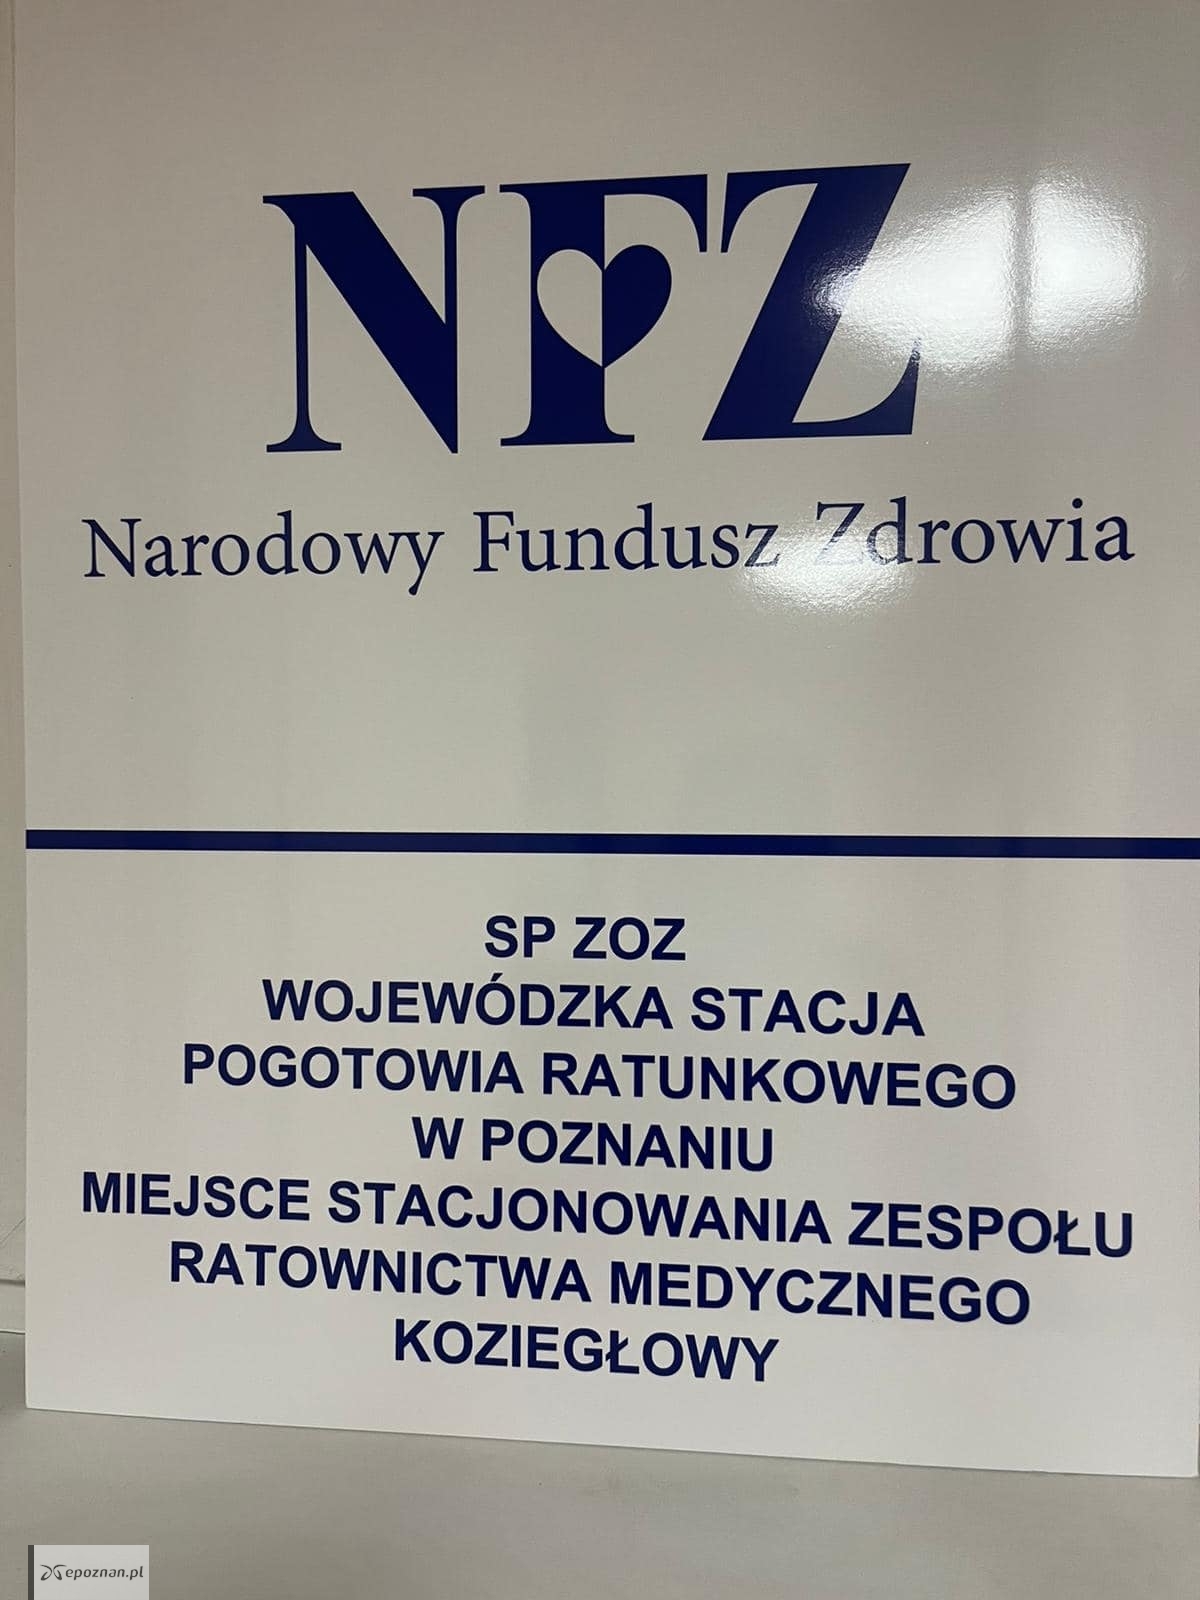 fot. Pogotowie Ratunkowe Poznań / FB